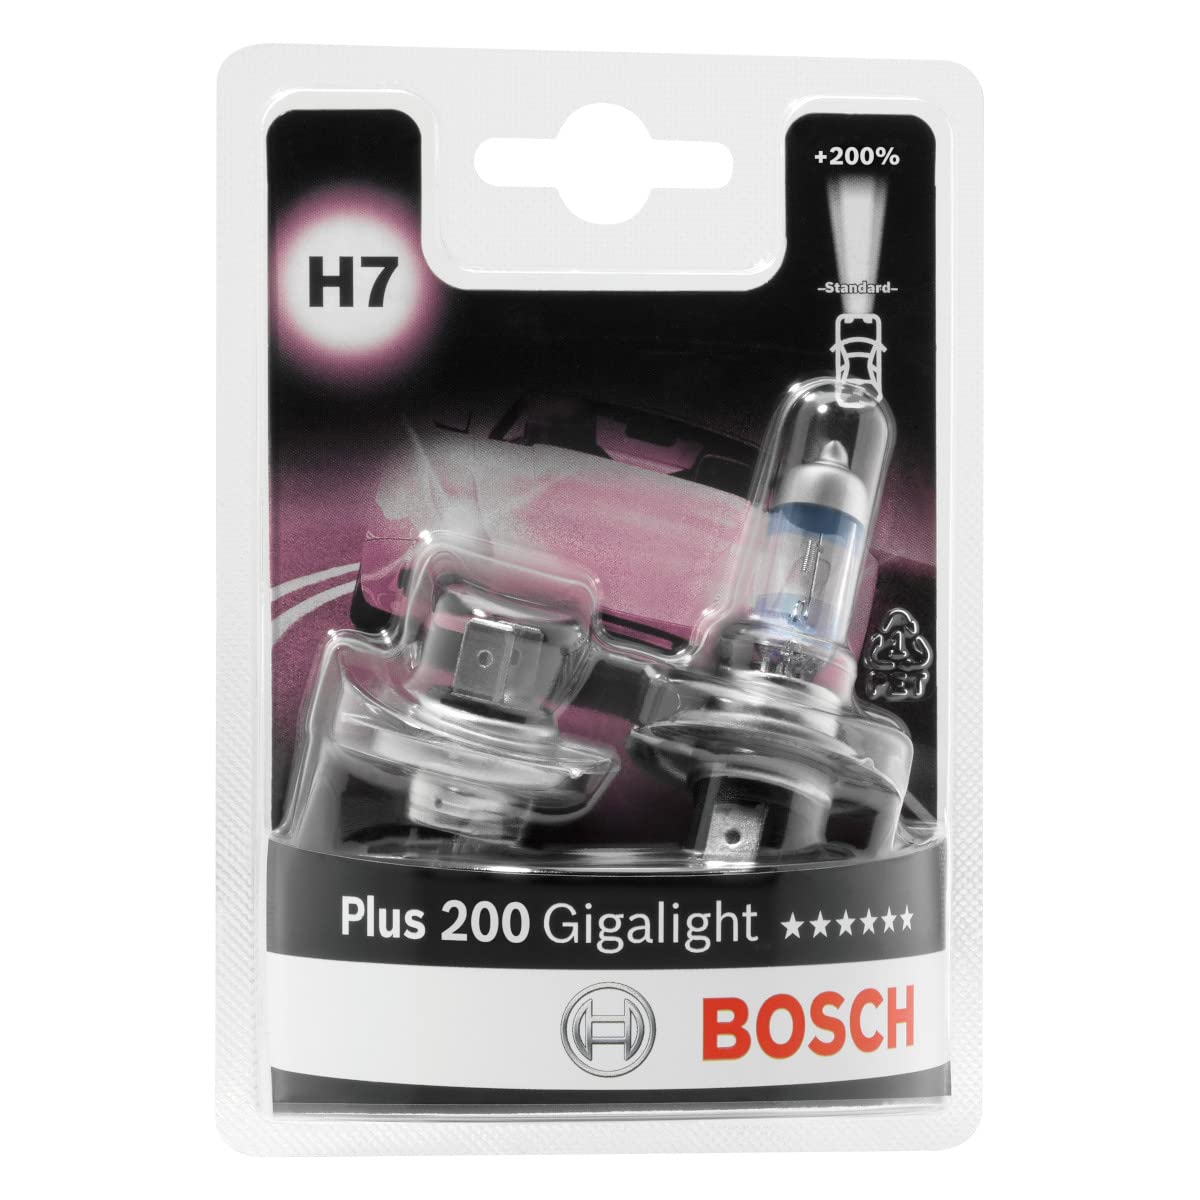 Bosch H7 Plus 200 Gigalight Lampen - 12 V 55 W PX26d - 2 Stücke von Bosch Automotive